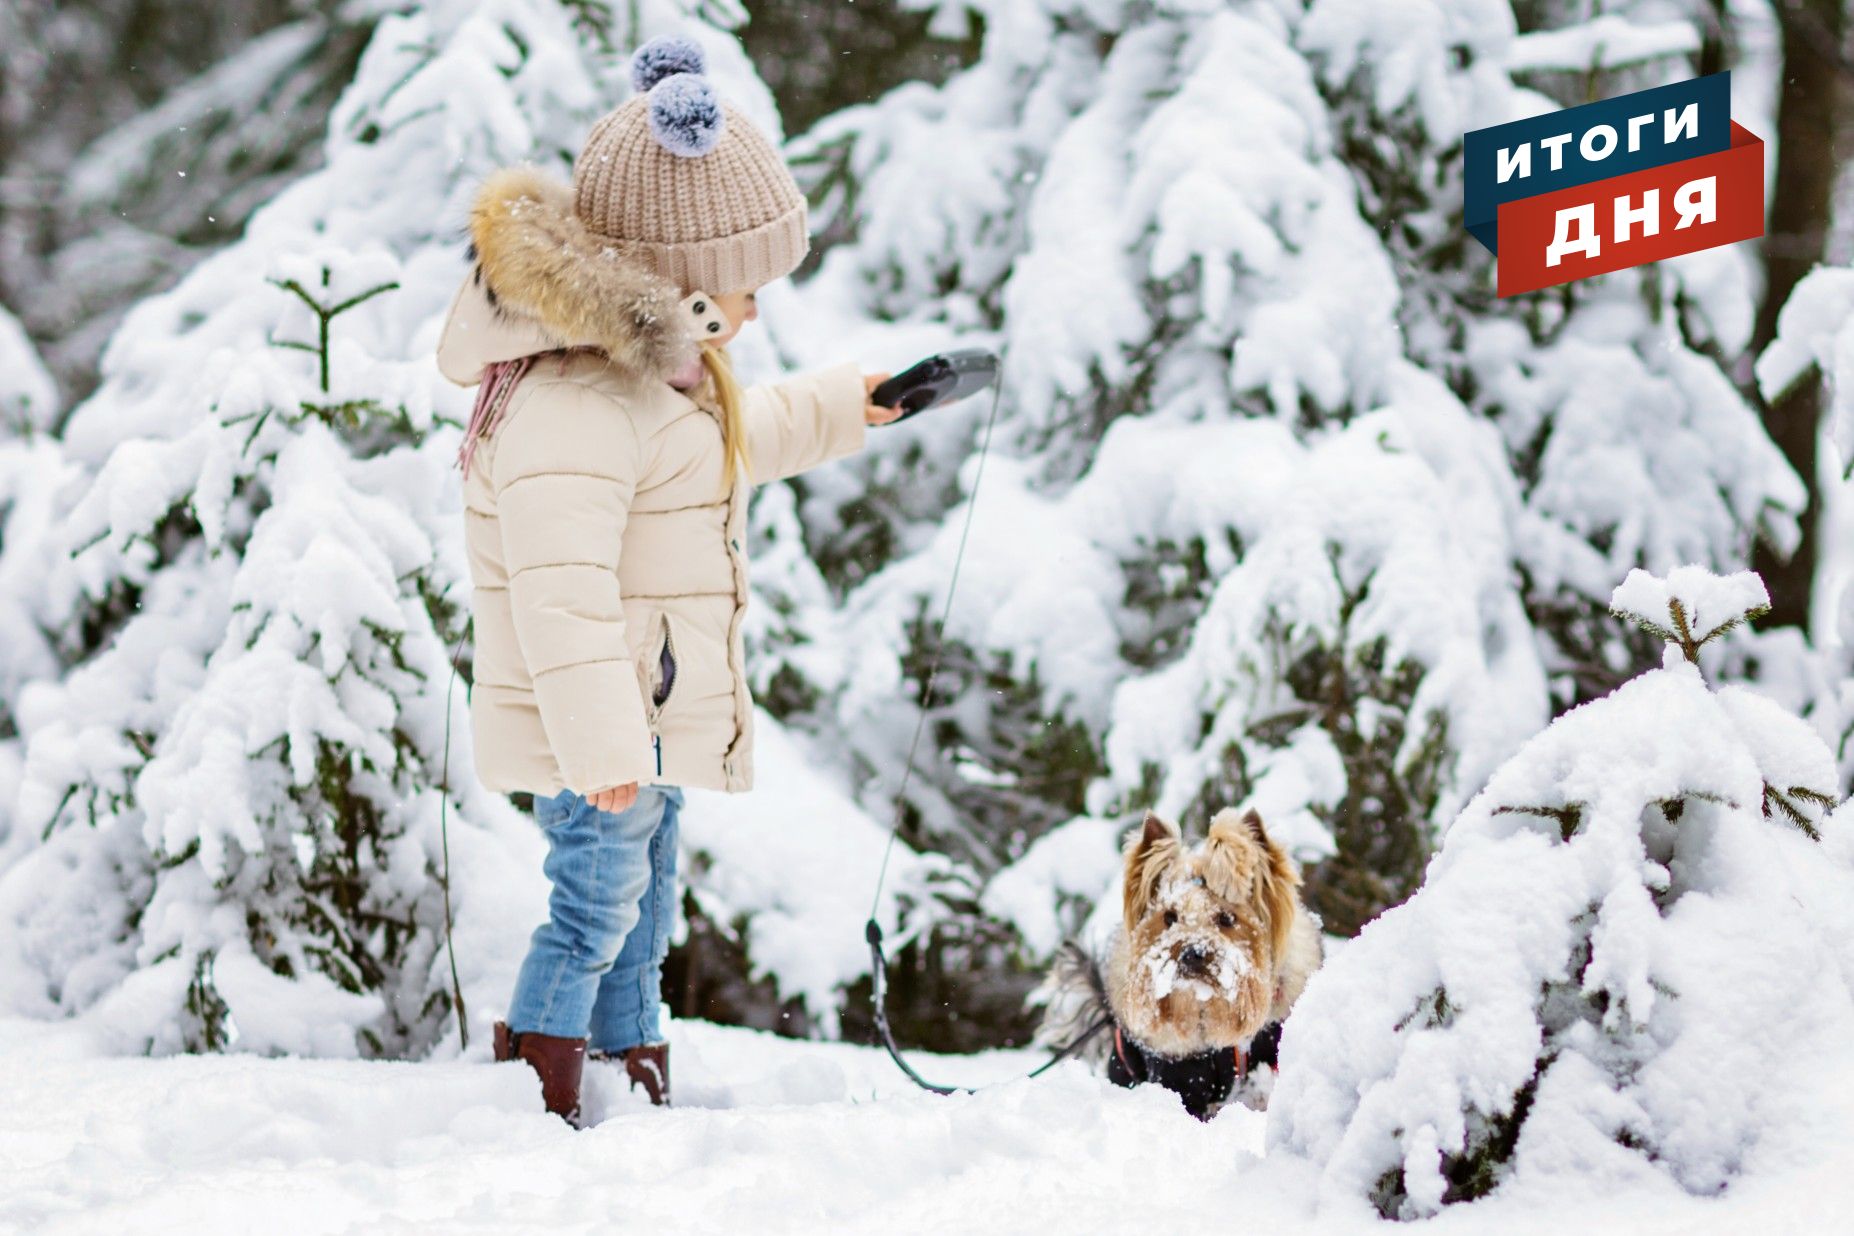 

Итоги дня: запрет на выгул собак на детских площадках в Ижевске и поиски тракториста, «воровавшего» снег

